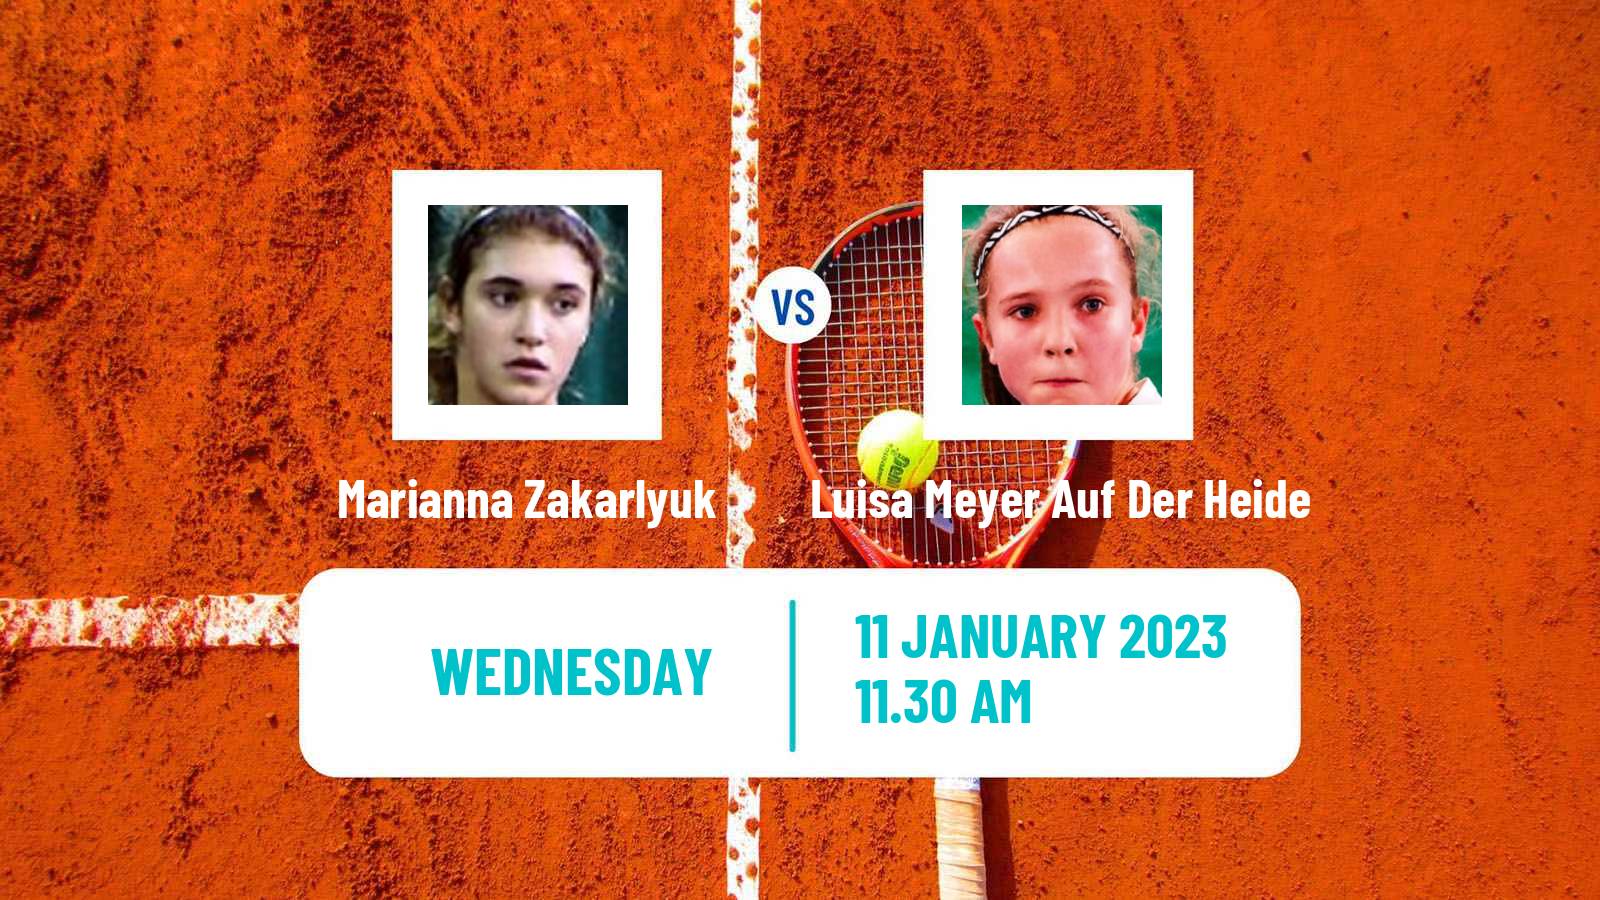 Tennis ITF Tournaments Marianna Zakarlyuk - Luisa Meyer Auf Der Heide